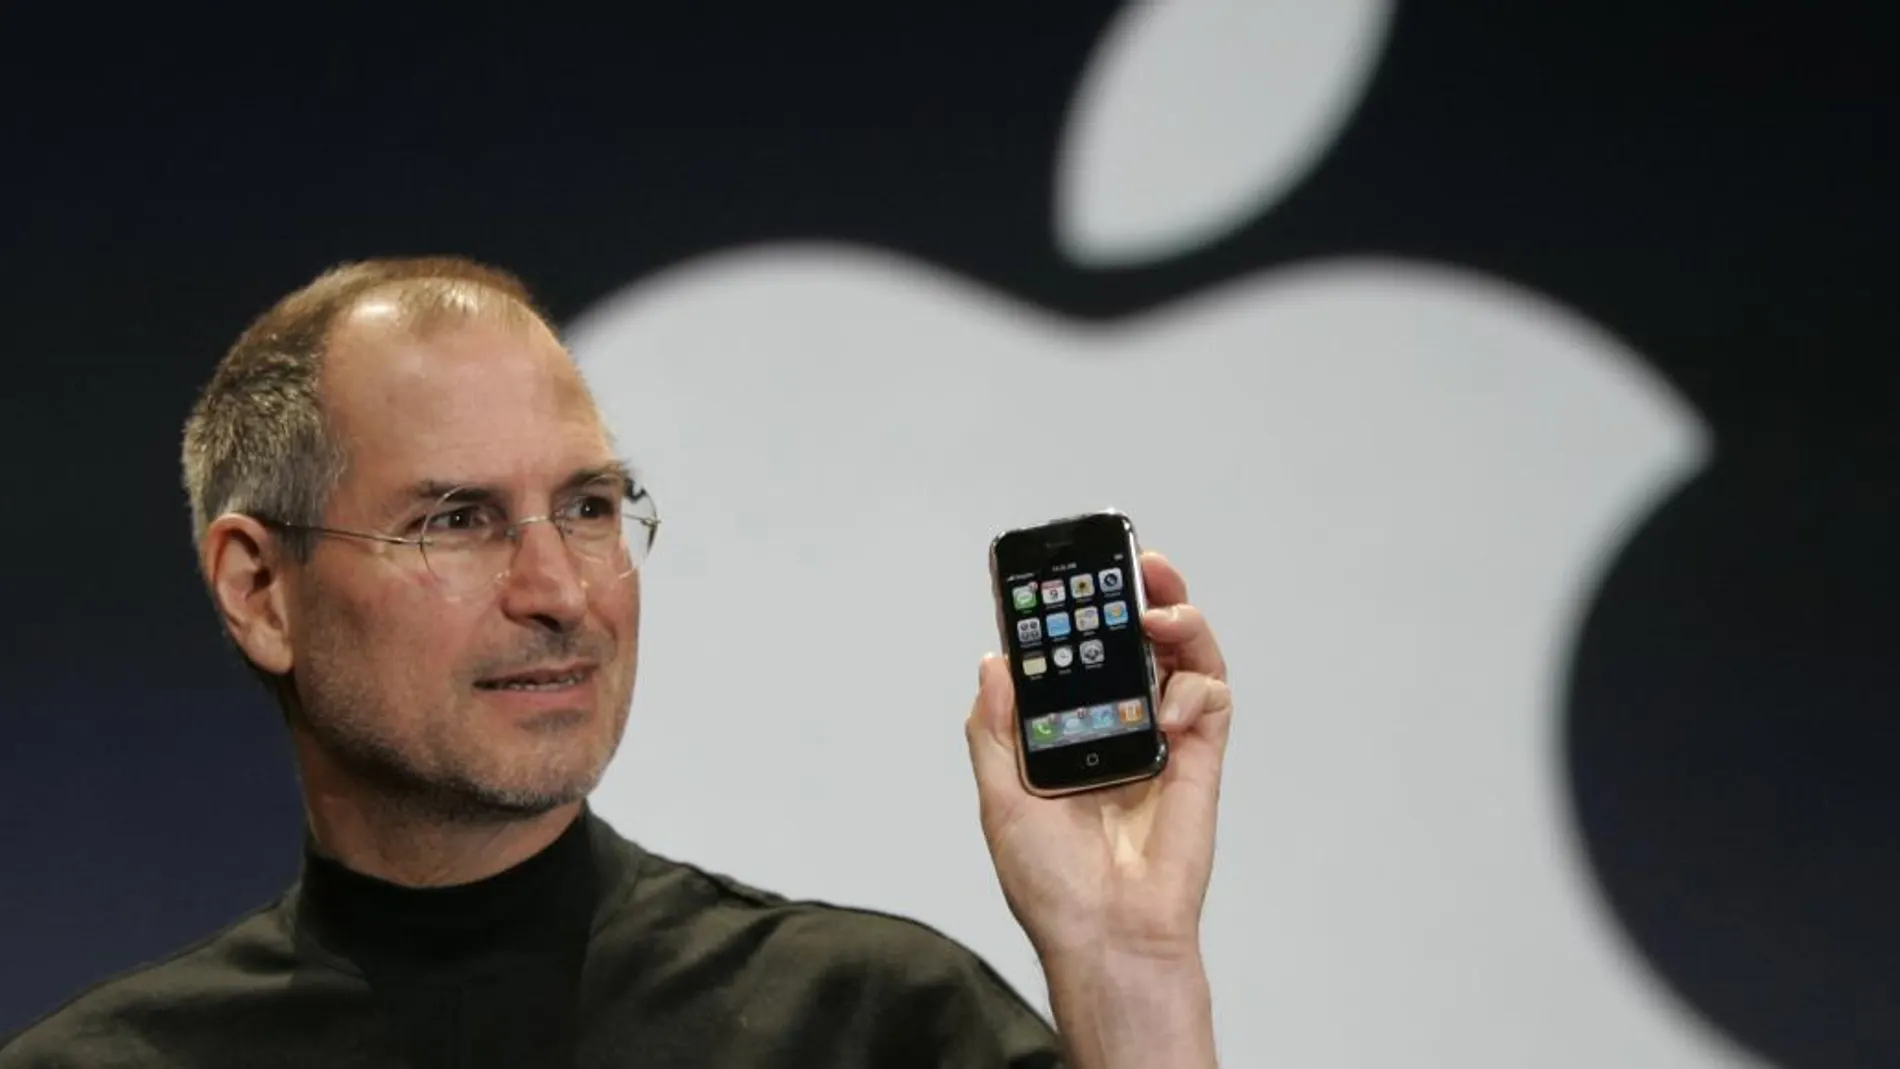 Steve Jobs el 9 de enero de 2007 presentando el iPhone, que se definió como un iPod con teléfono móvil y pantalla táctil.